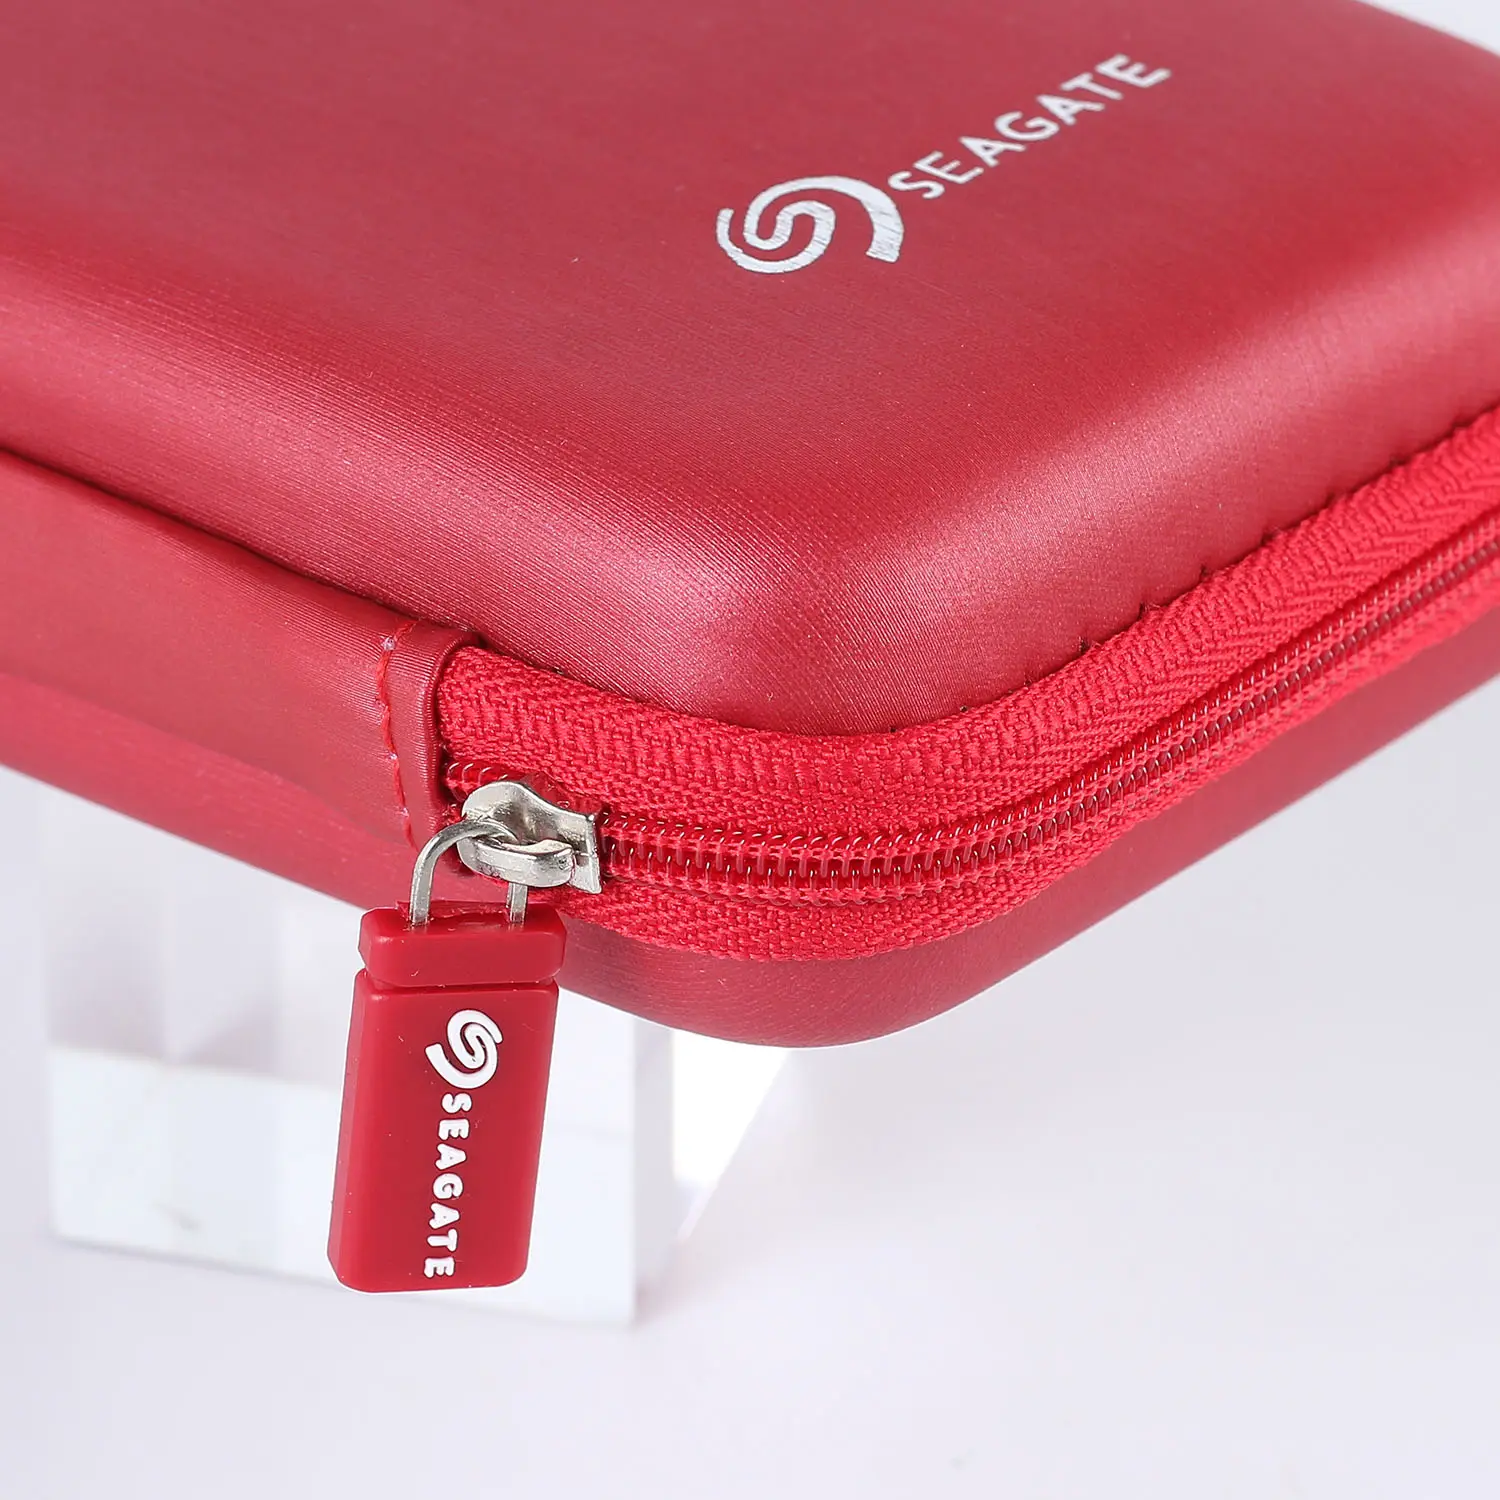 Toptan özel taşınabilir HDD saklama çantası USB sabit Disk kutu Seagate sabit Disk için sert asetat çanta fermuar kese ile